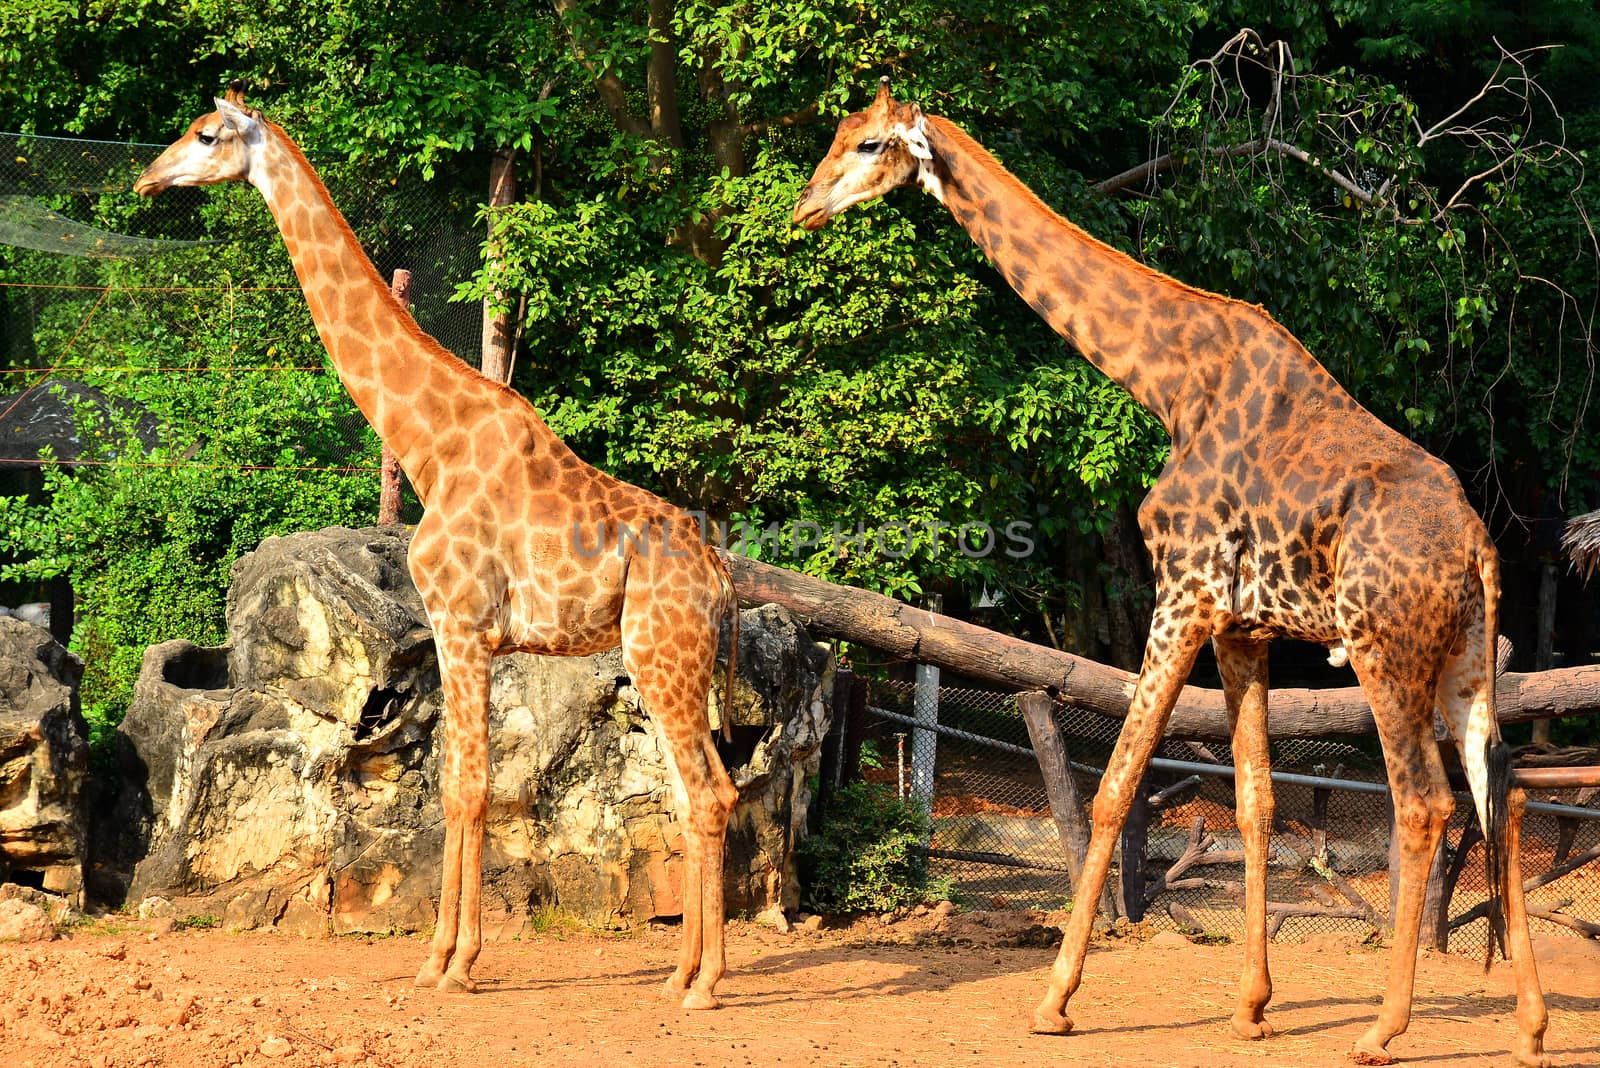 Giraffe at Dusit Zoo in Khao Din Park, Bangkok, Thailand by imwaltersy